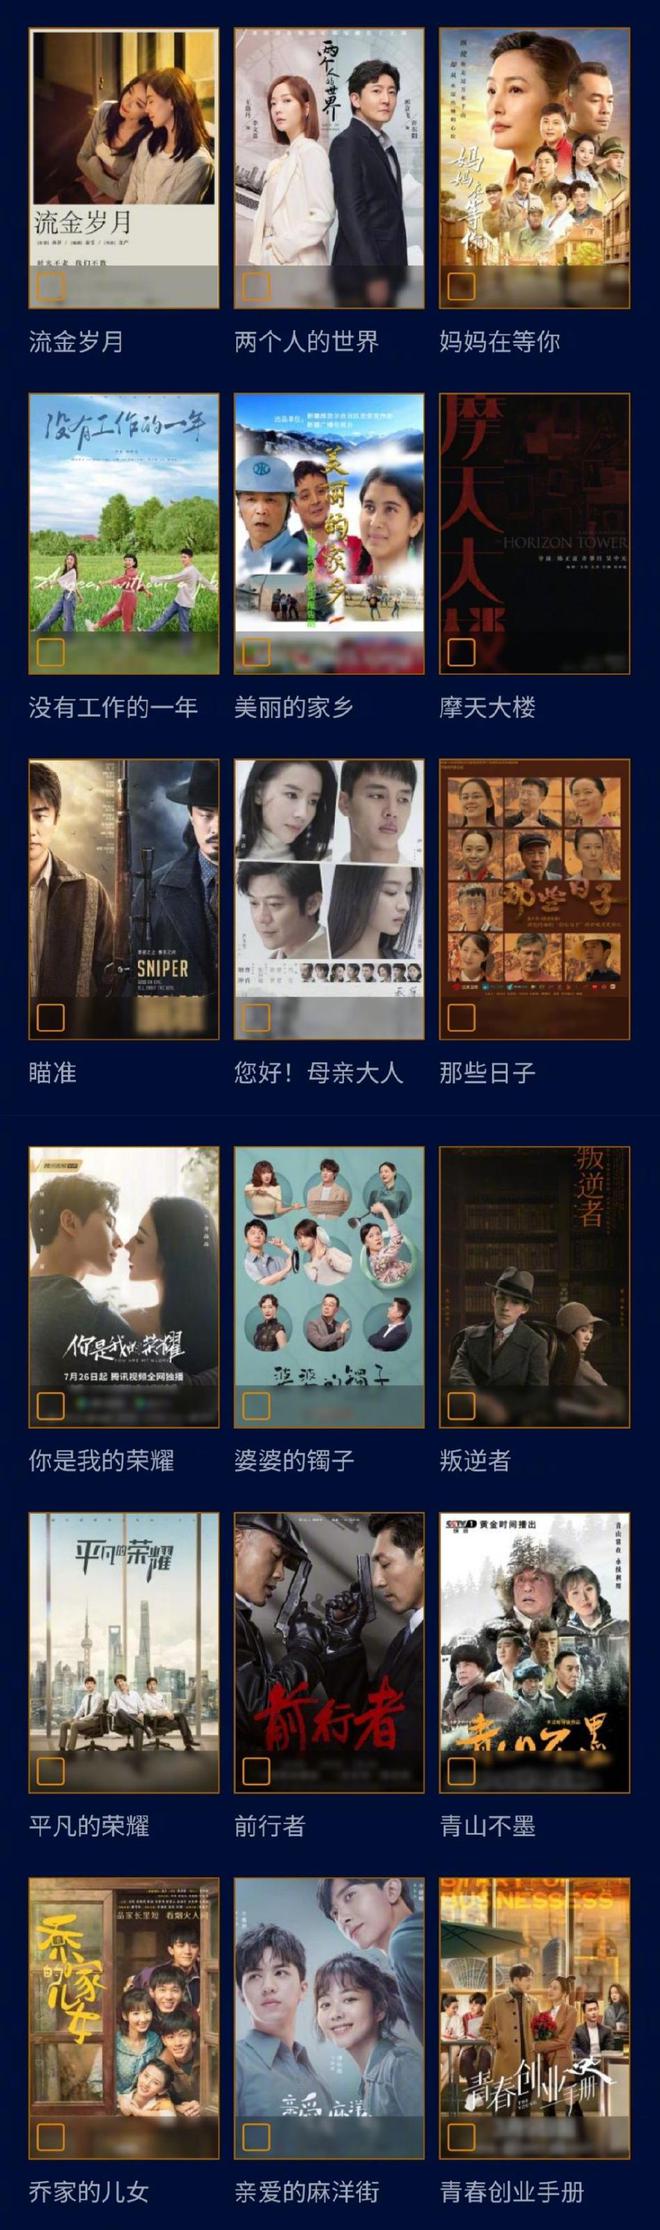 第31届中国电视金鹰奖候选名单公布 多部热剧入围